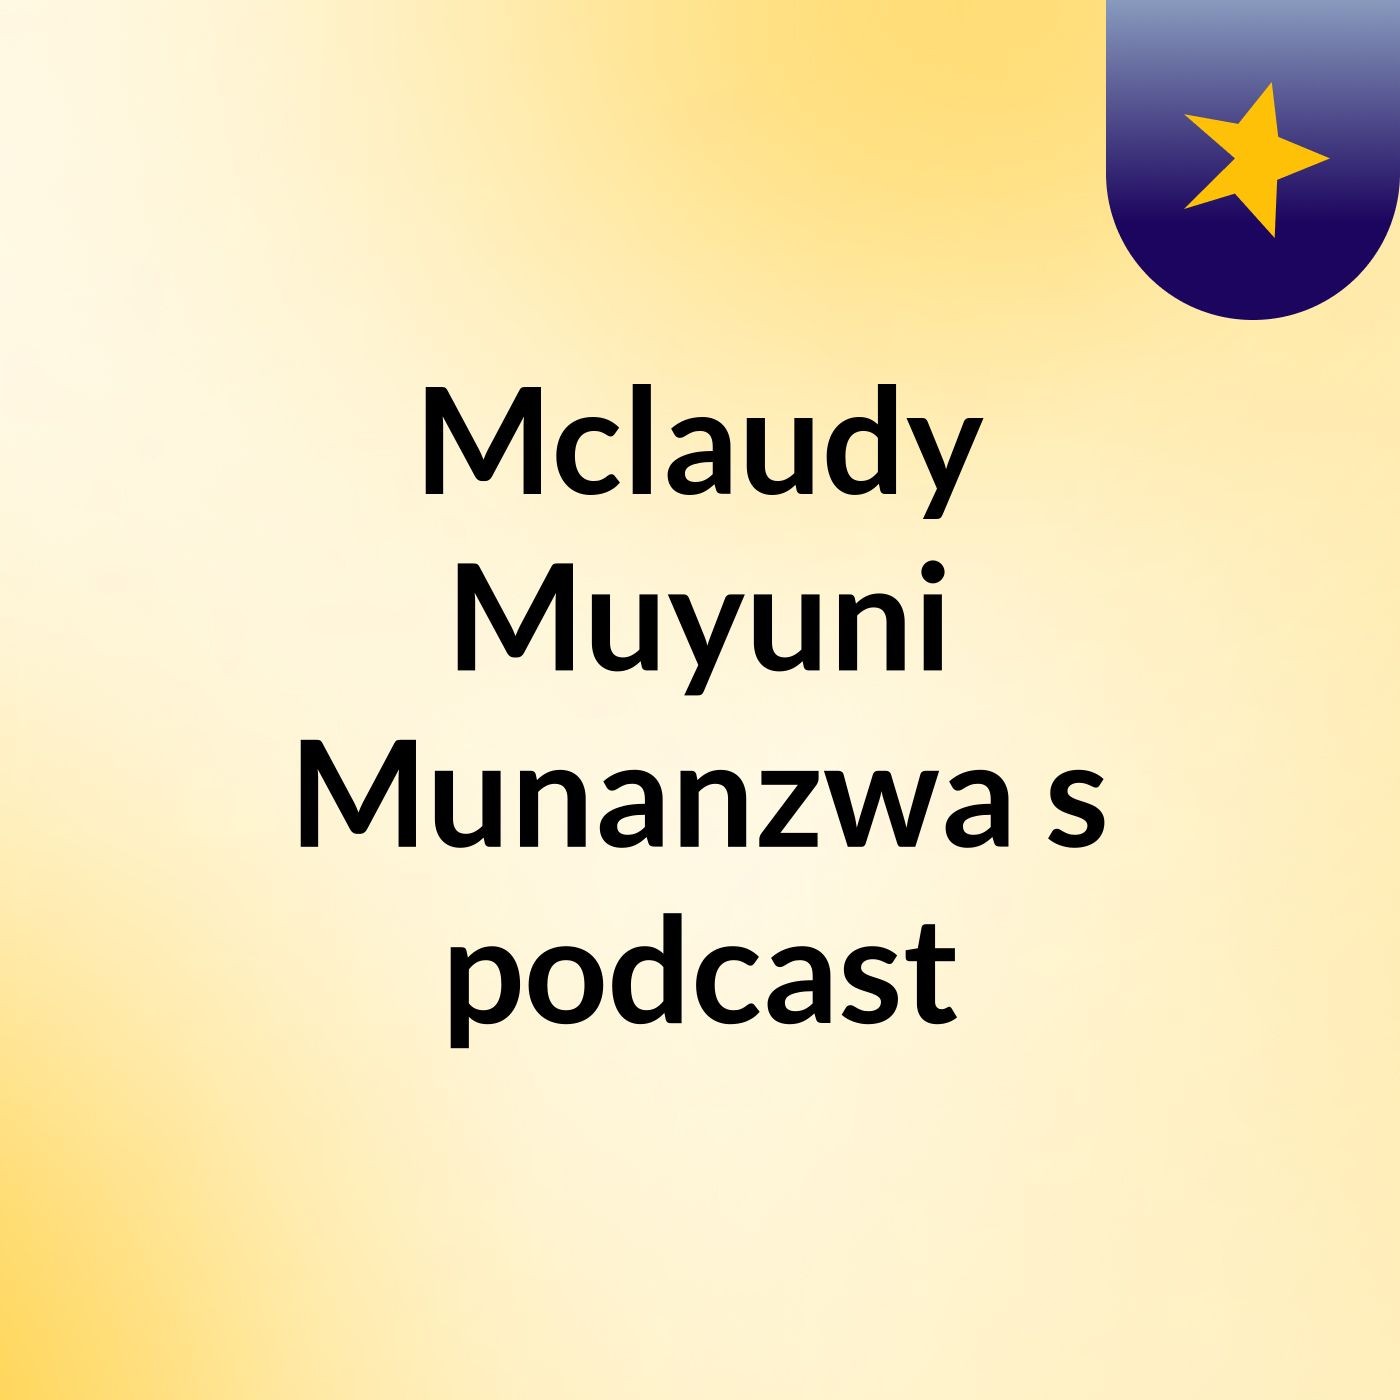 Episode 5 - Mclaudy Muyuni Munanzwa's podcast